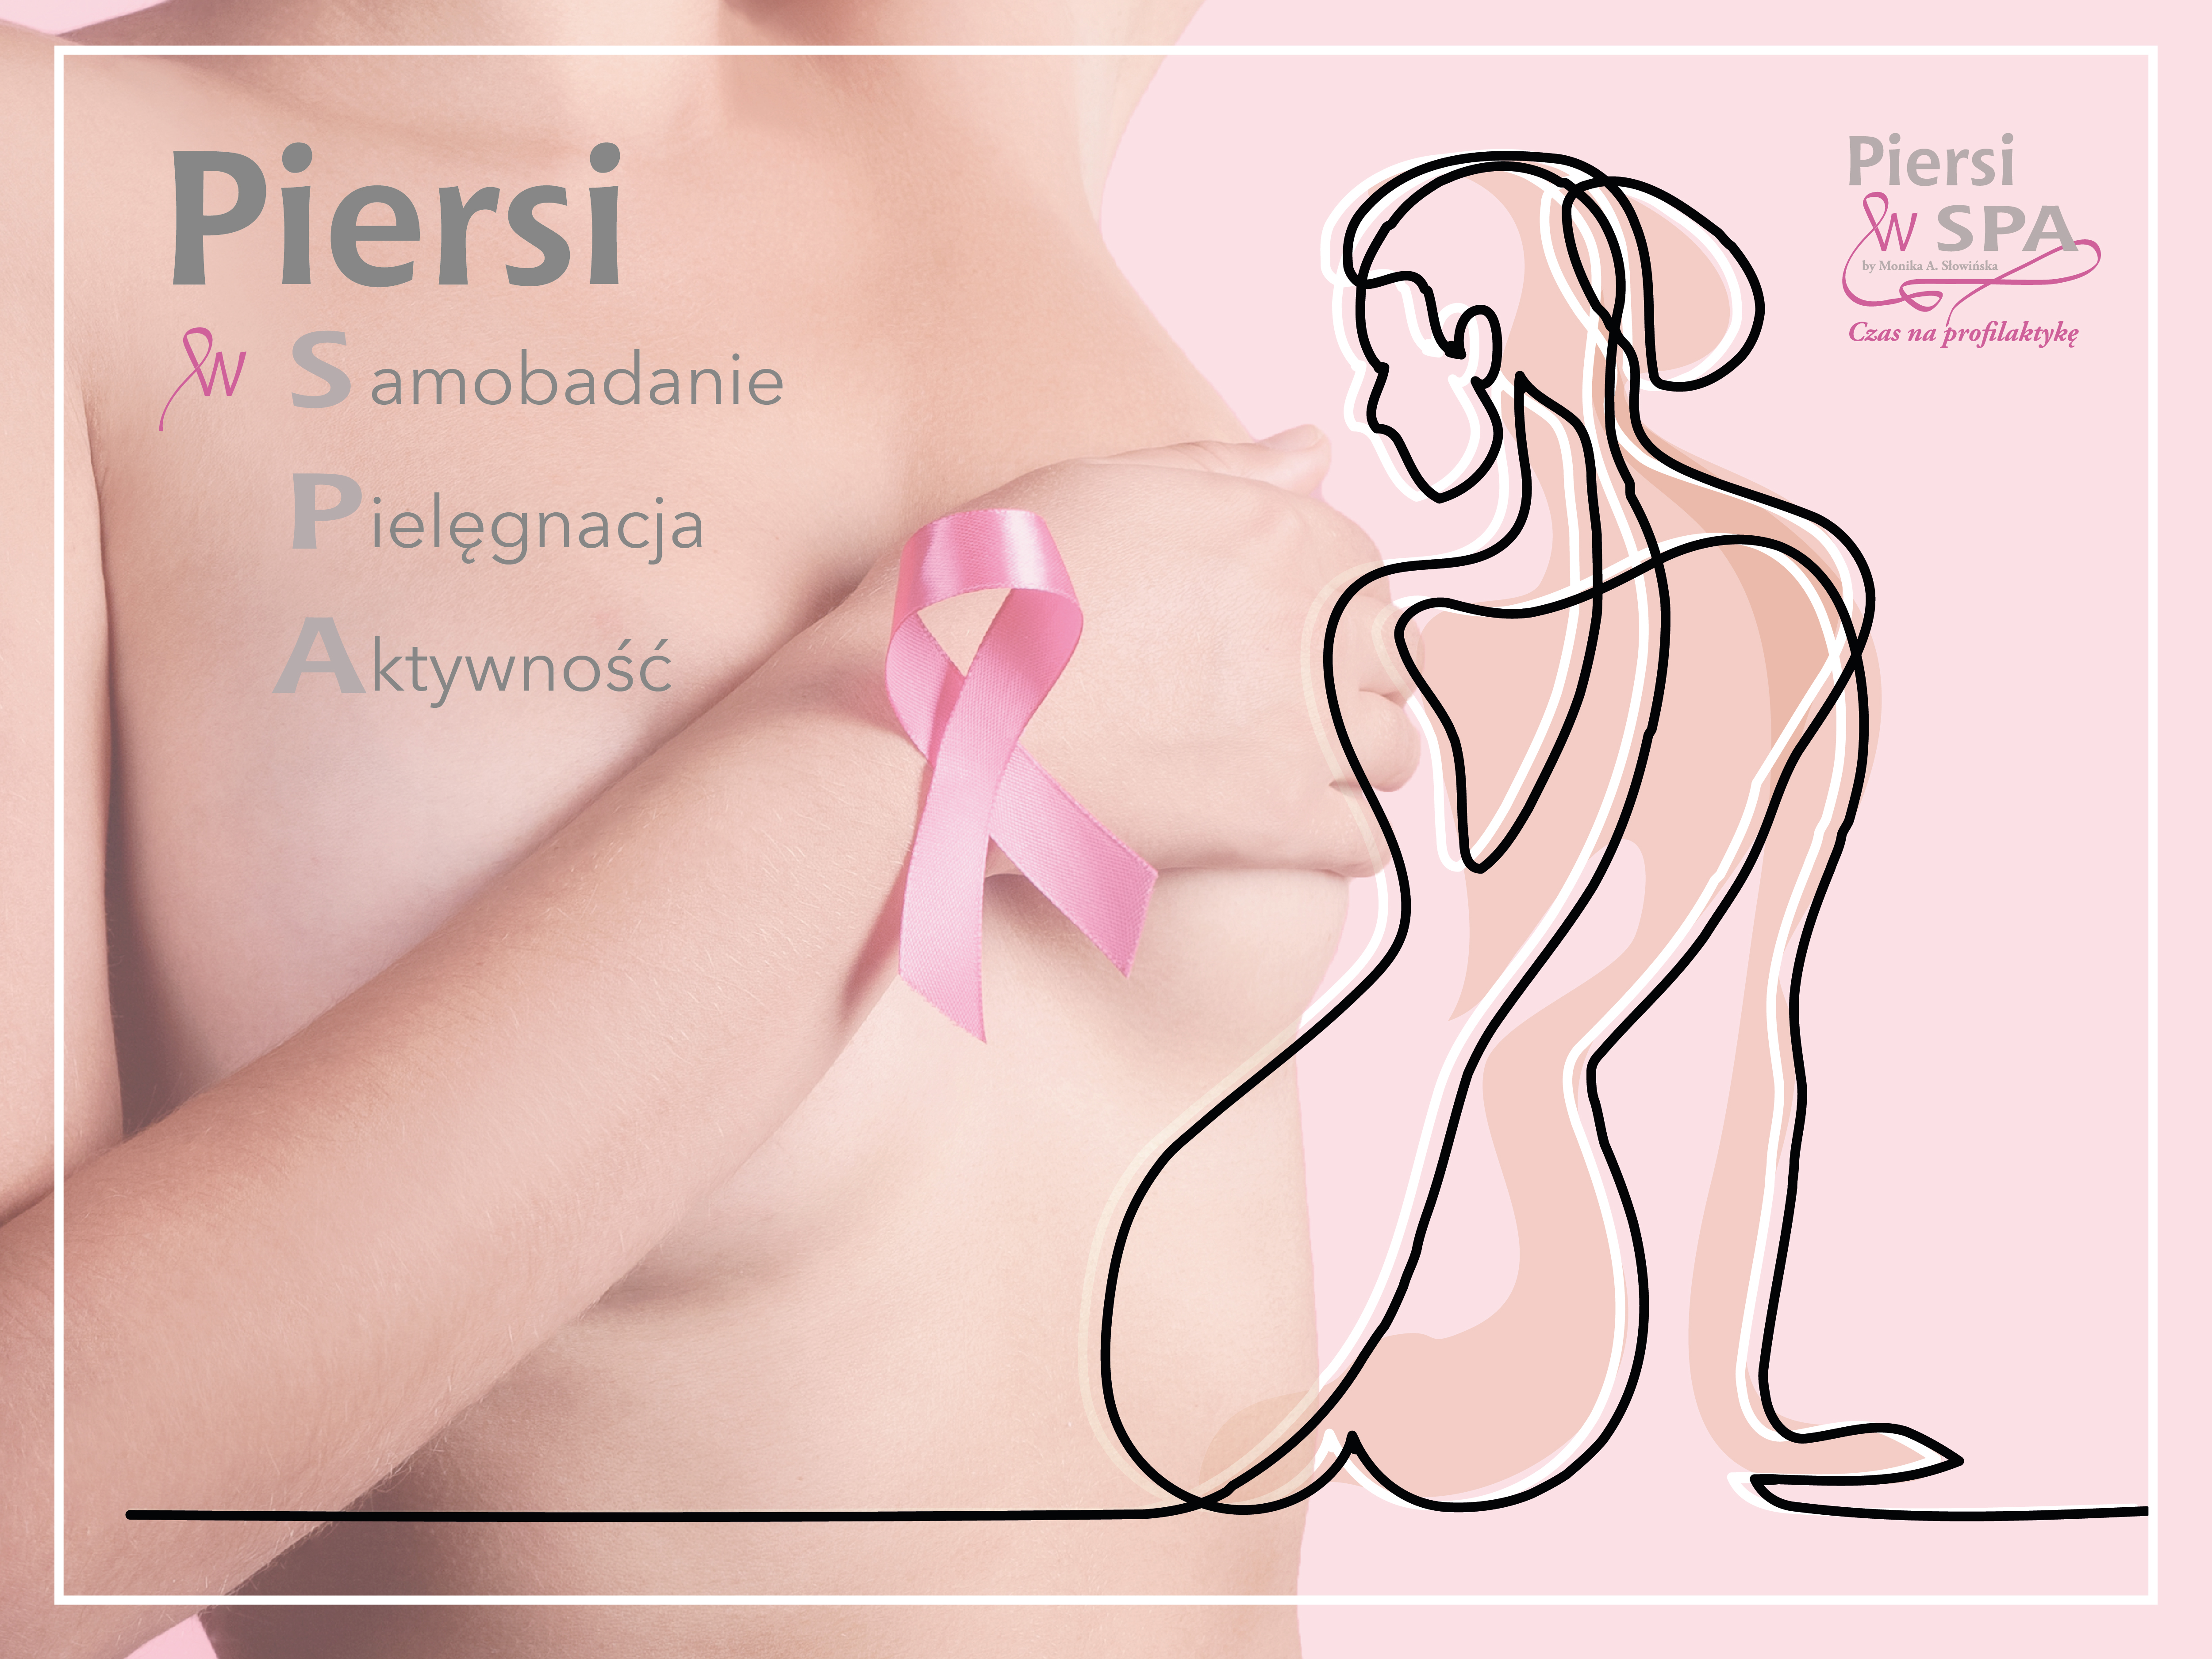 Październik - miesiąc świadomości raka piersi. O projekcie Piersi w SPA